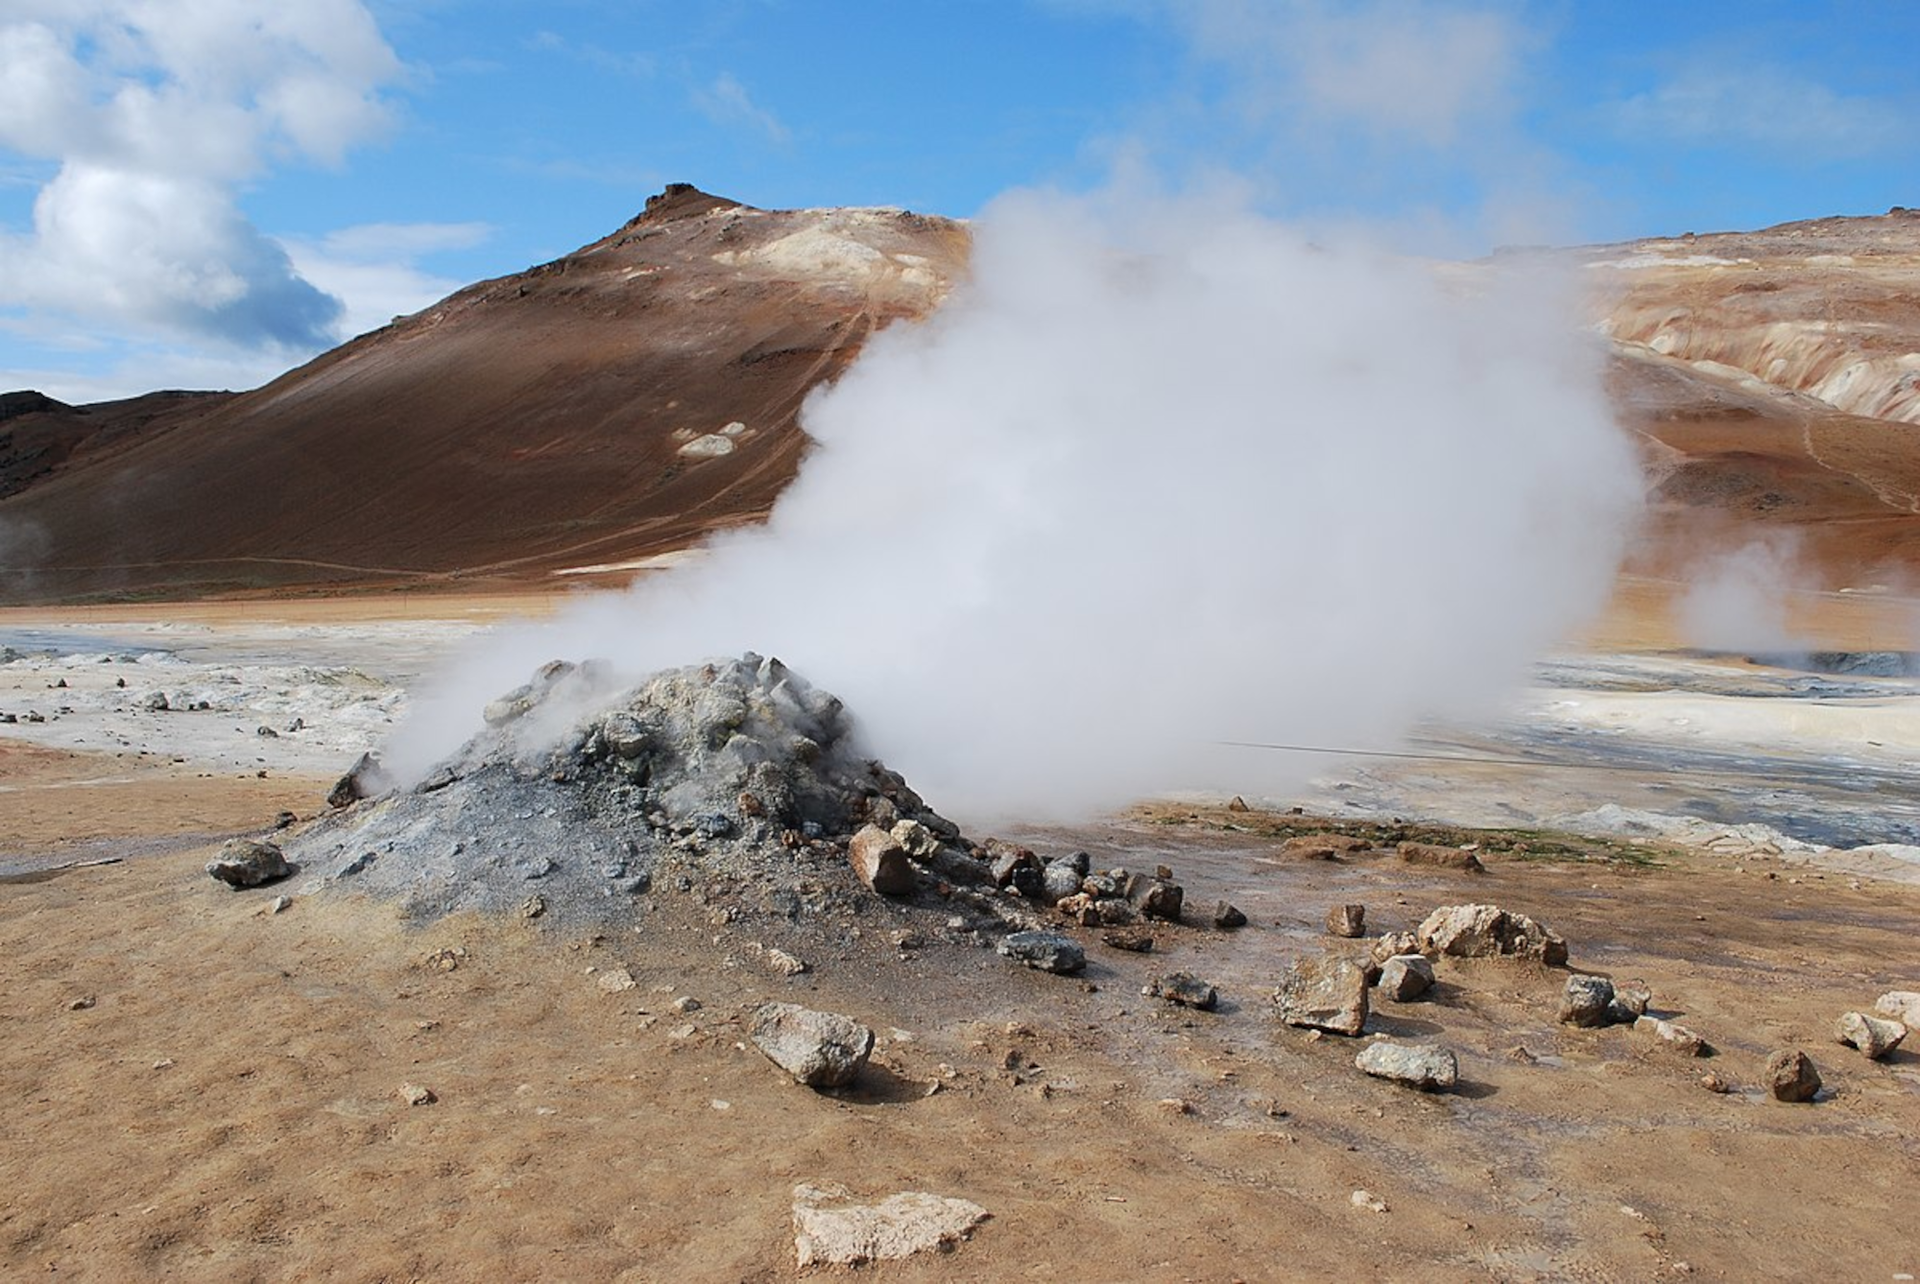 Grafika przedstawia zdjęcie fumaroli, czyli wyziewu wulkanicznego (szczeliny w skorupie ziemskiej, która jest objawem aktywności wulkanicznej), z którego wydobywa się biały gaz. Znajduję się on u podnóża brązowej góry. Na pierwszym planie widoczny jest brązowy piasek i szary krater w ziemi, z którego wydobywa się gaz.